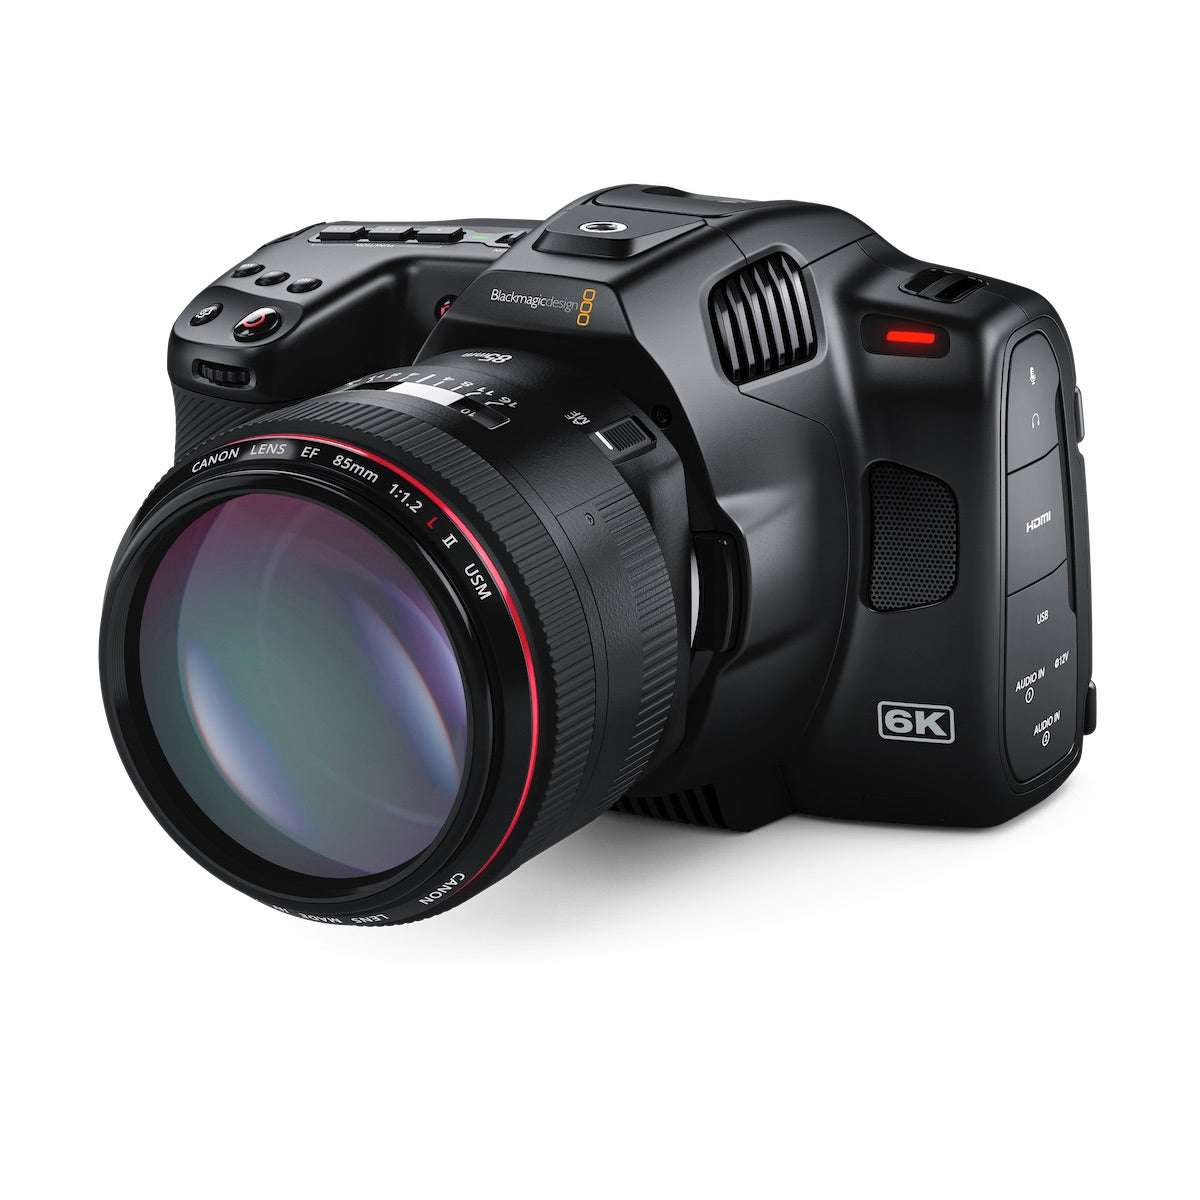 Blackmagic Pocket Cinema Camera 6K Pro with Super 35 HDR Sensor, lens not included